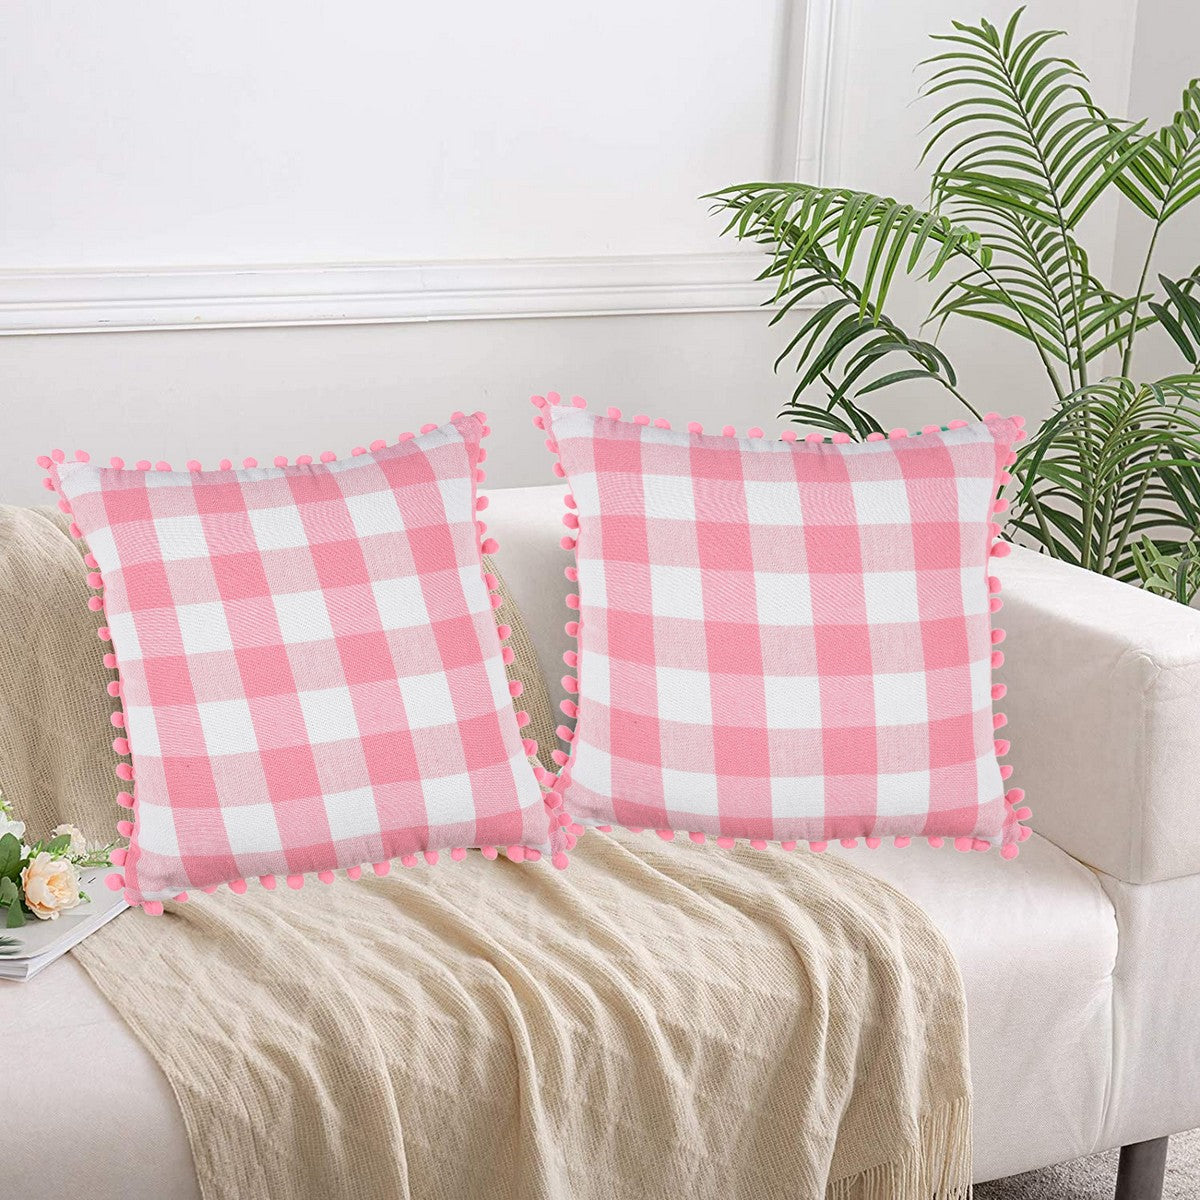 Lushomes Square Cushion Cover with Pom Pom, Cotton Sofa Pillow Cover Set of 2, 16x16 Inch, Big Checks, Pink and White Checks, Pillow Cushions Covers (Pack of 2, 40x40 Cms)